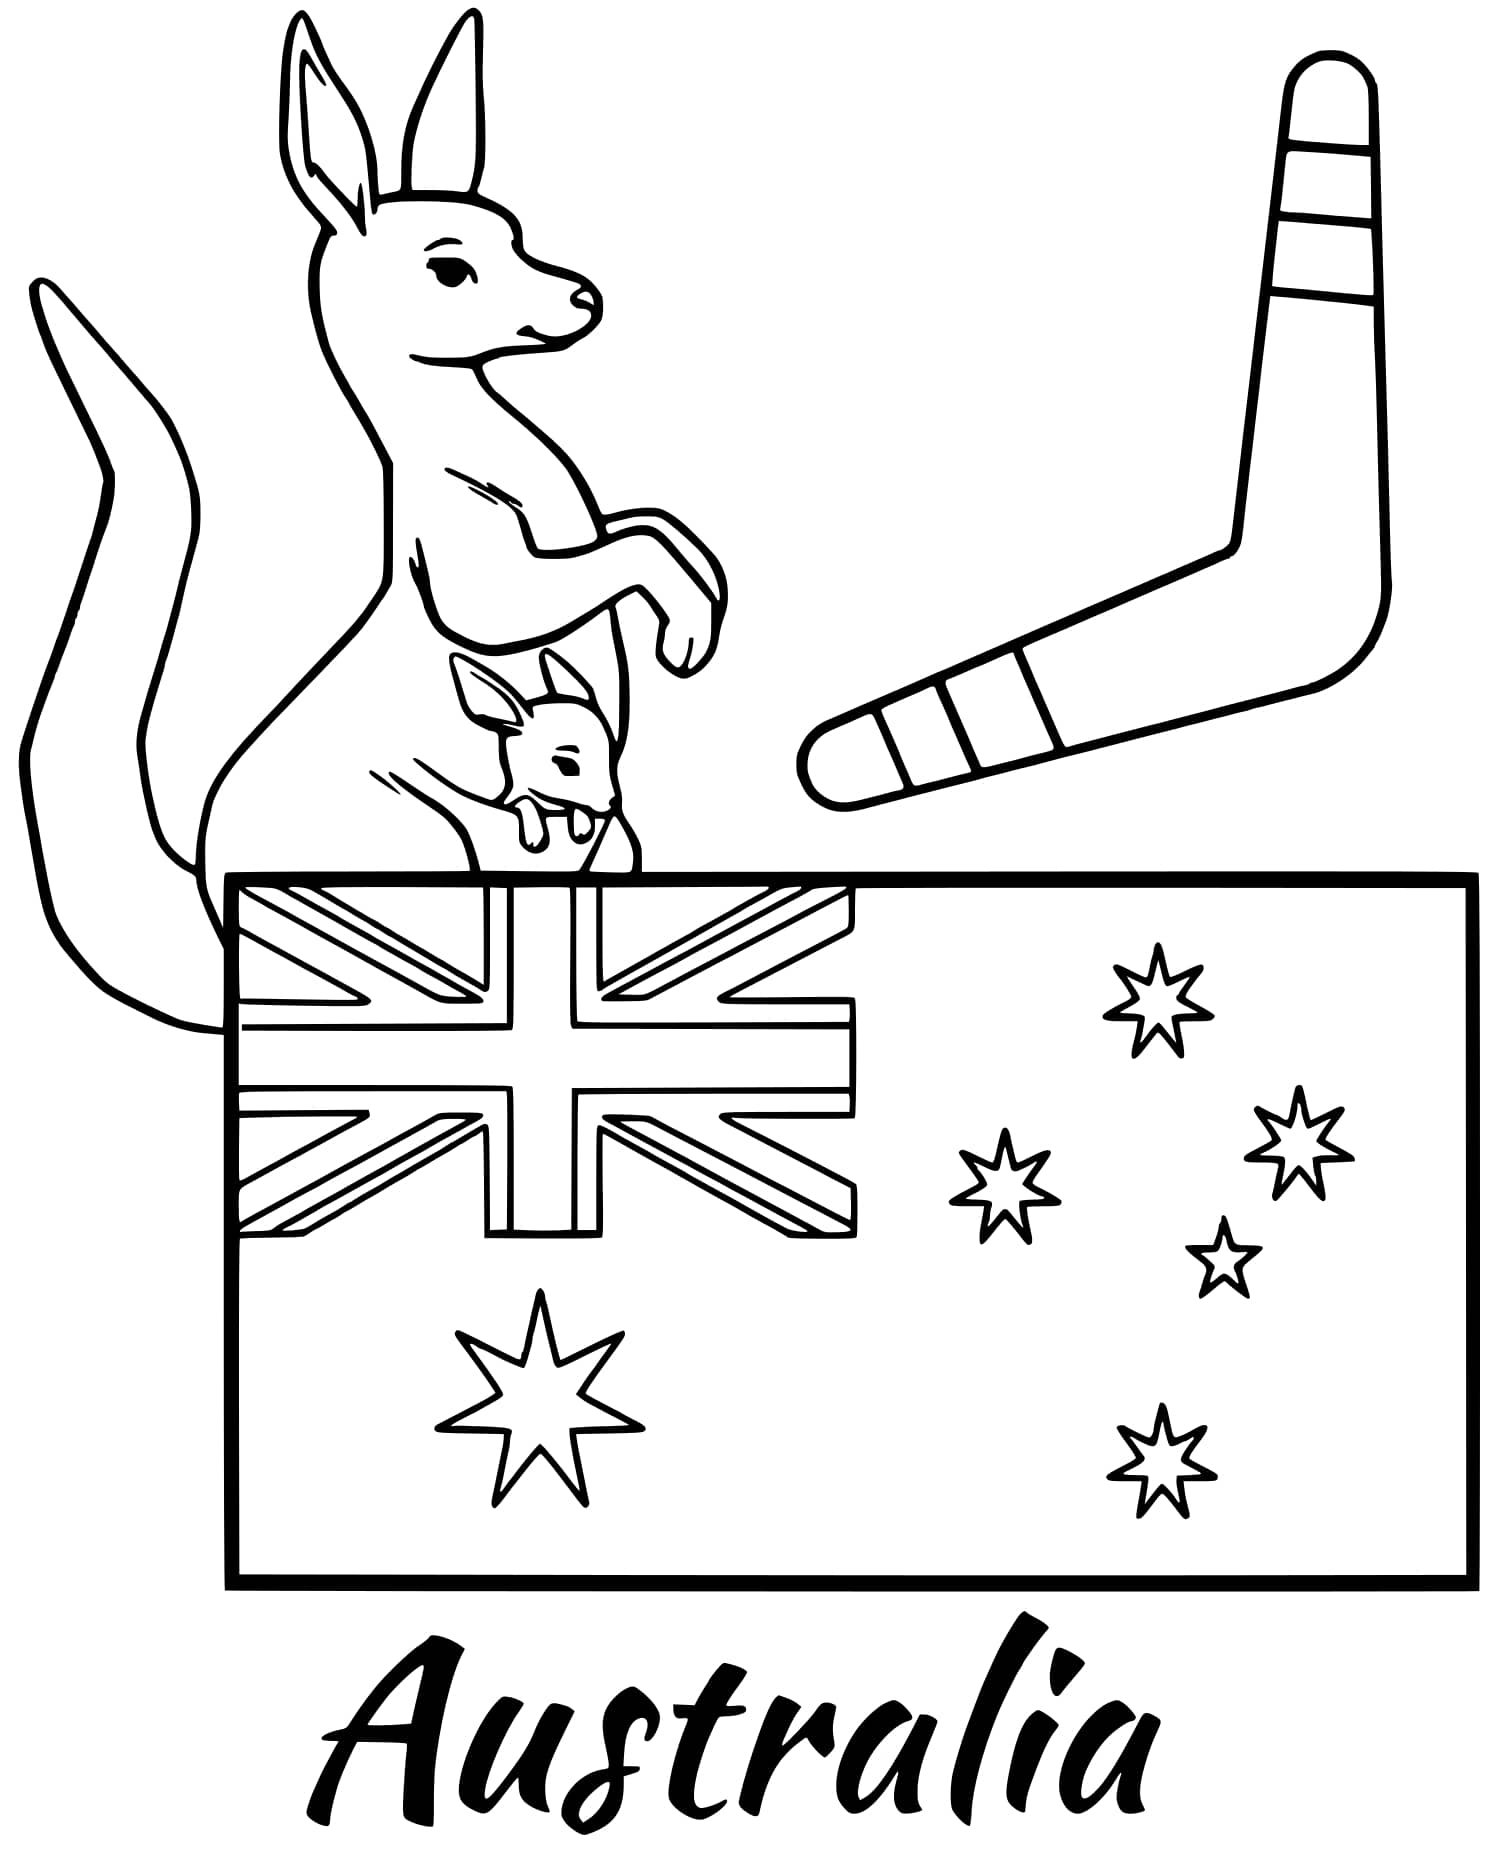 Австралия флаг и герб раскраска